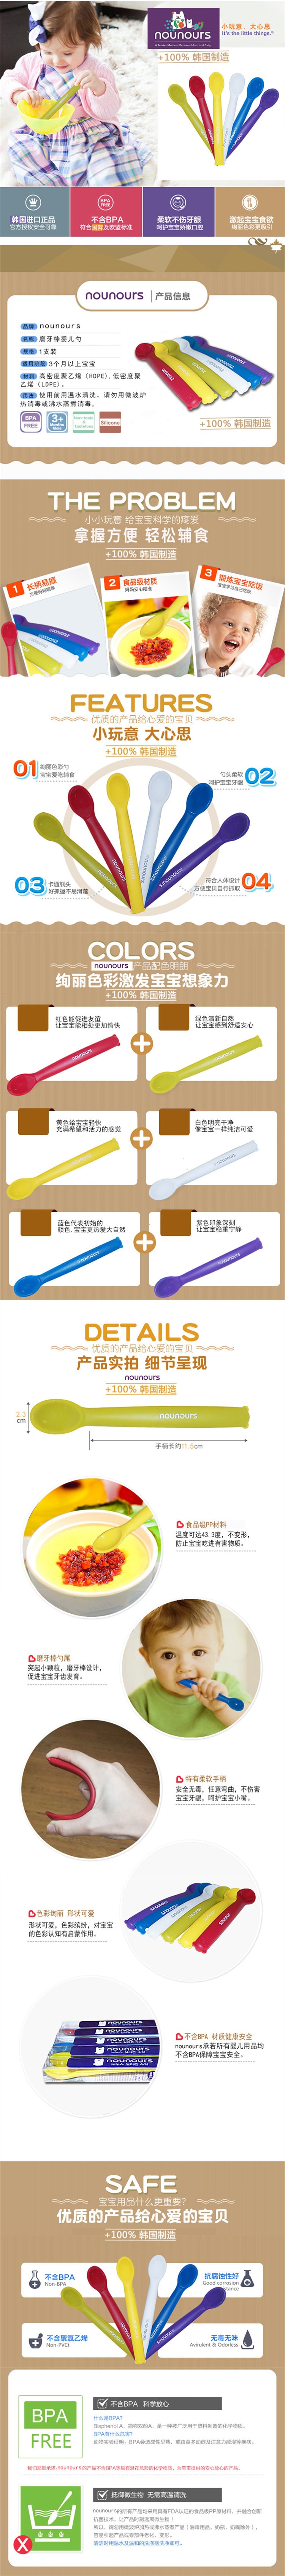 [韩国正品]  Nounours 磨牙棒婴儿勺 3种 (红/绿/黄色)